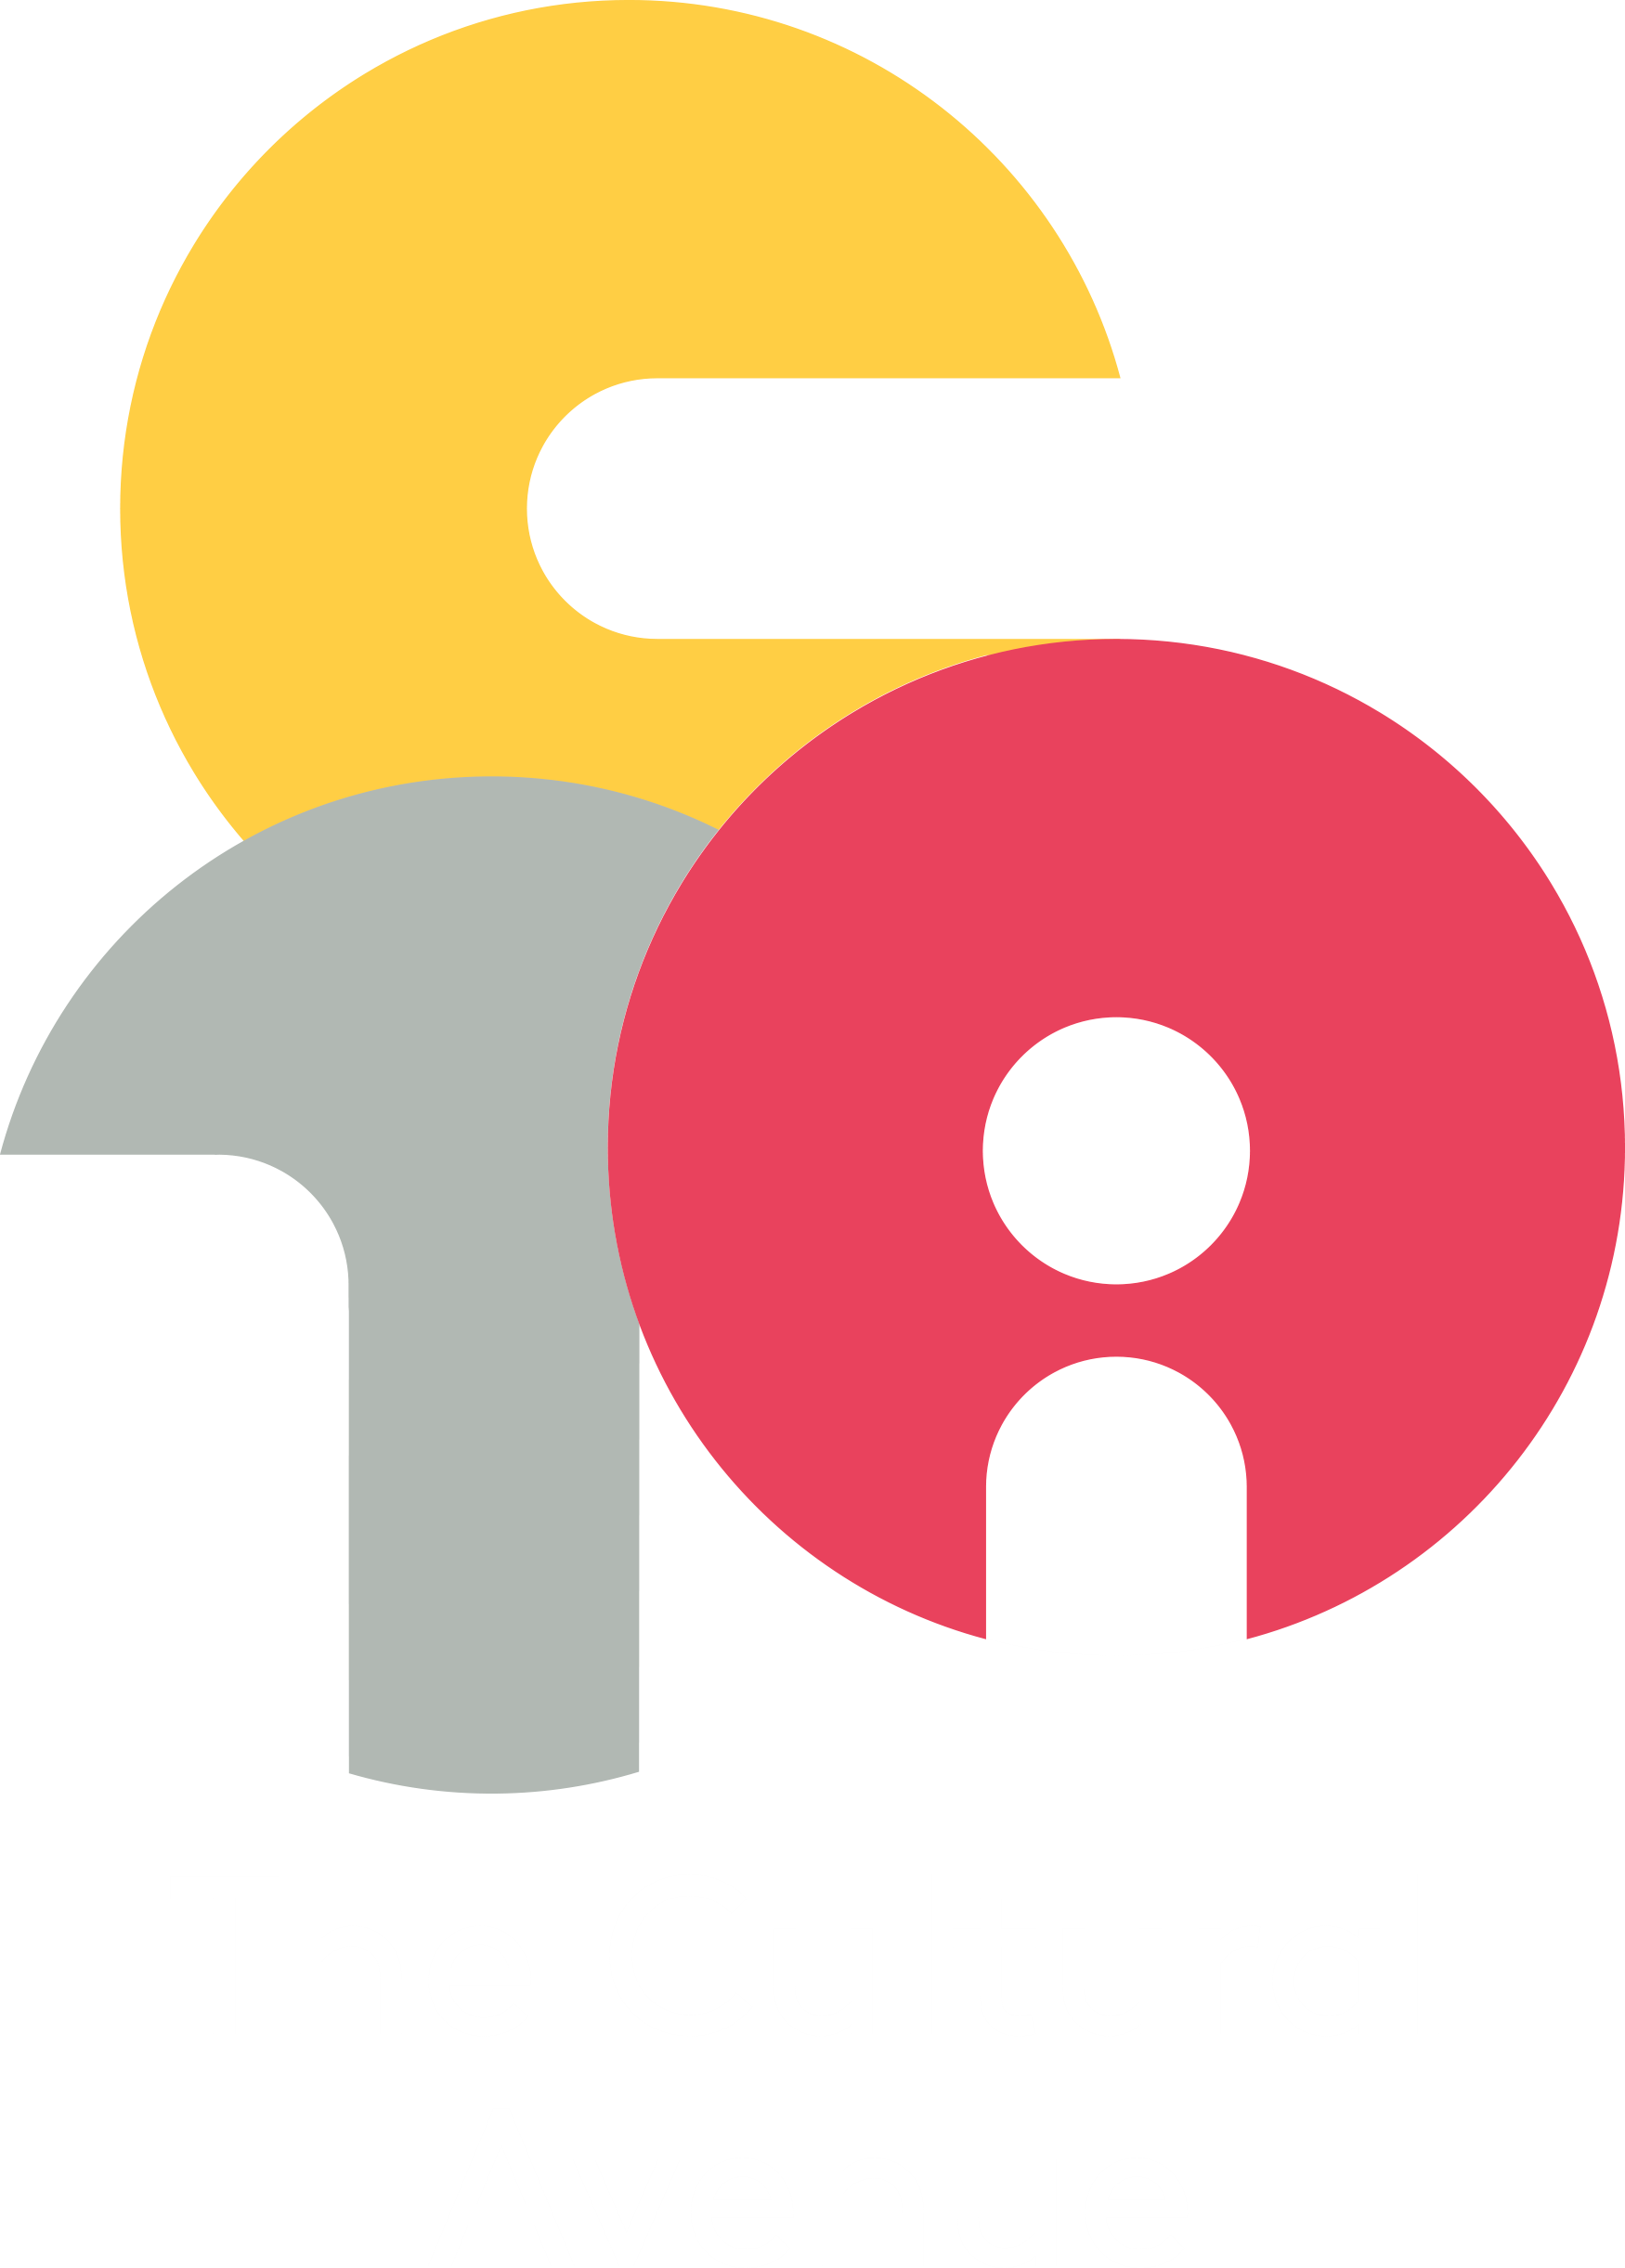 culture clipart cultural environment